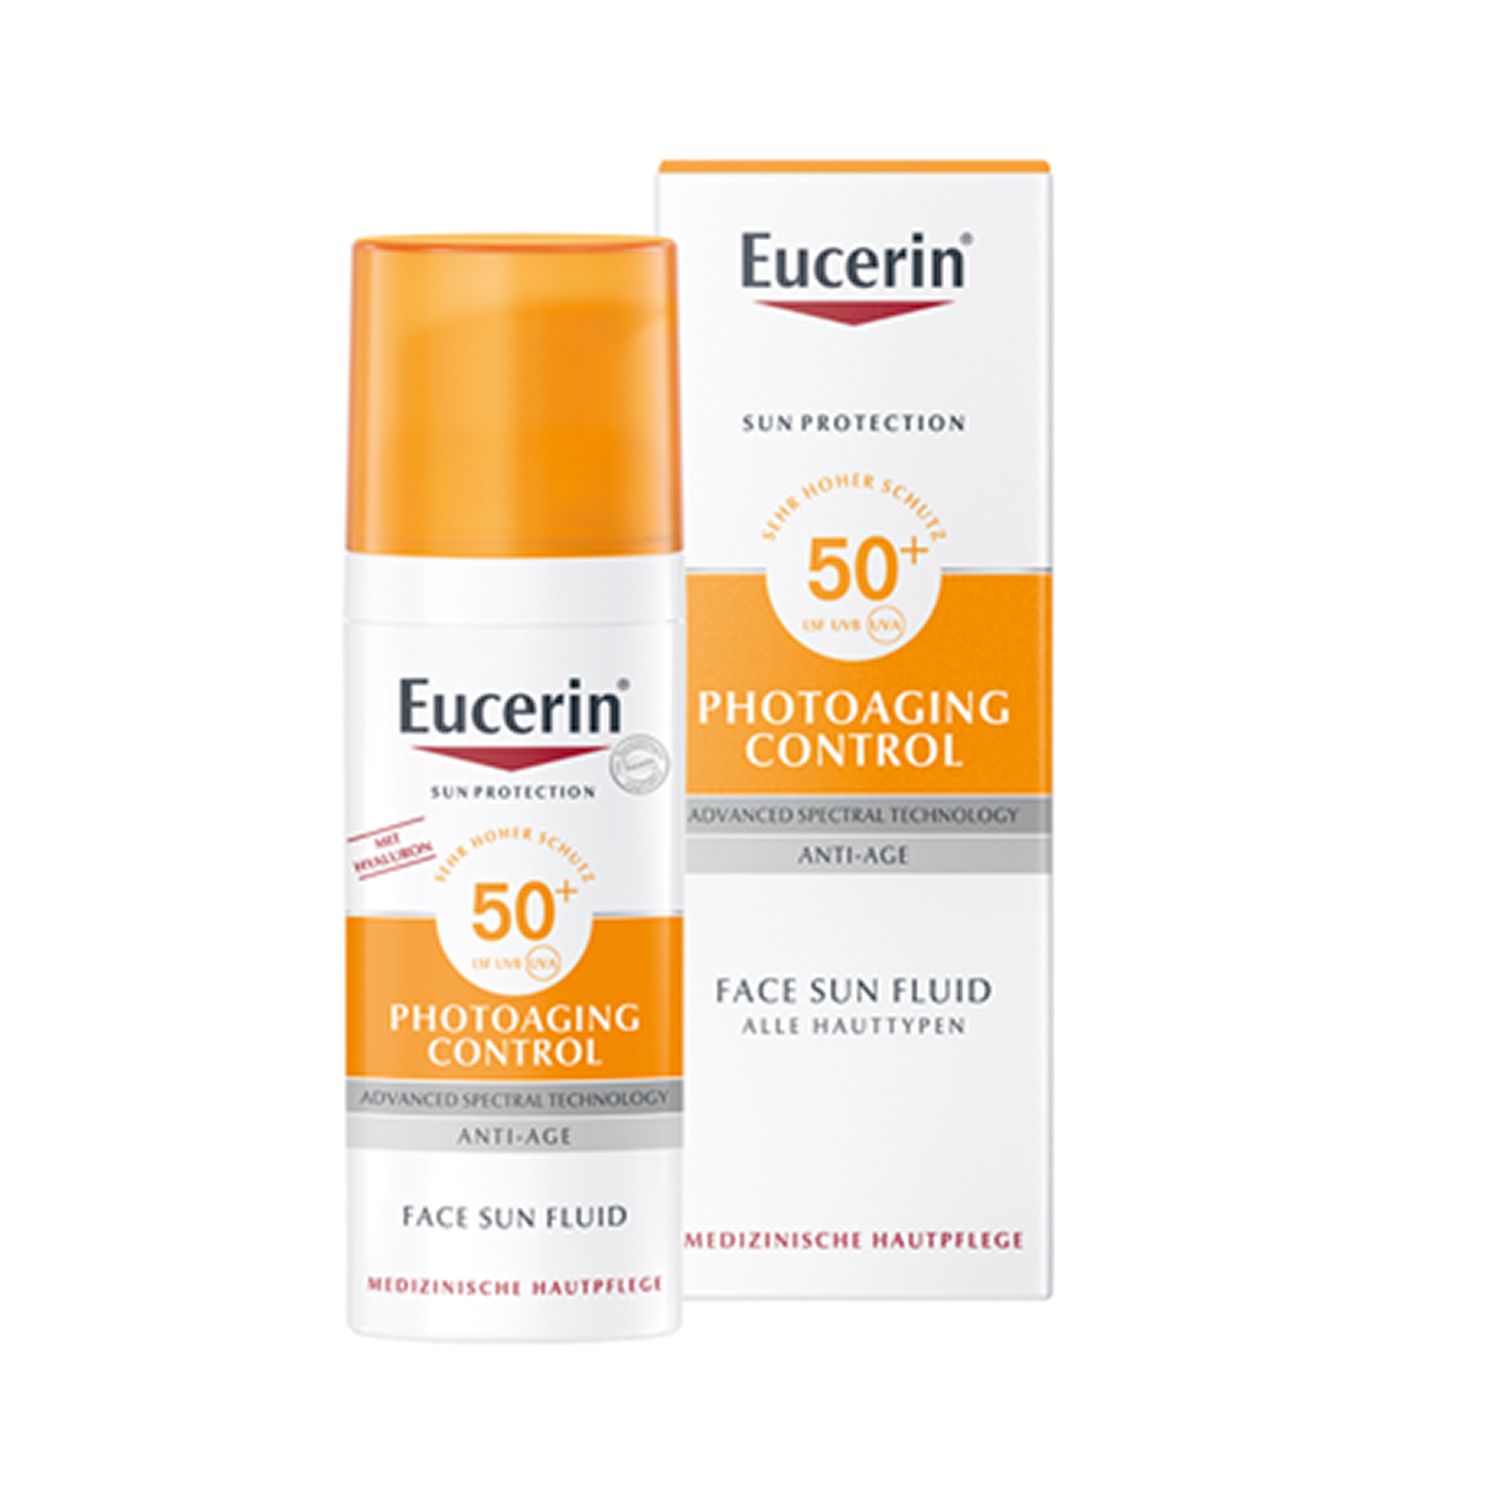 Eucerin® Photoaging Control Face Sun Fluid LSF 50 – hoher Sonnenschutz hilft gegen Photoaging und reduziert Falten sichtbar